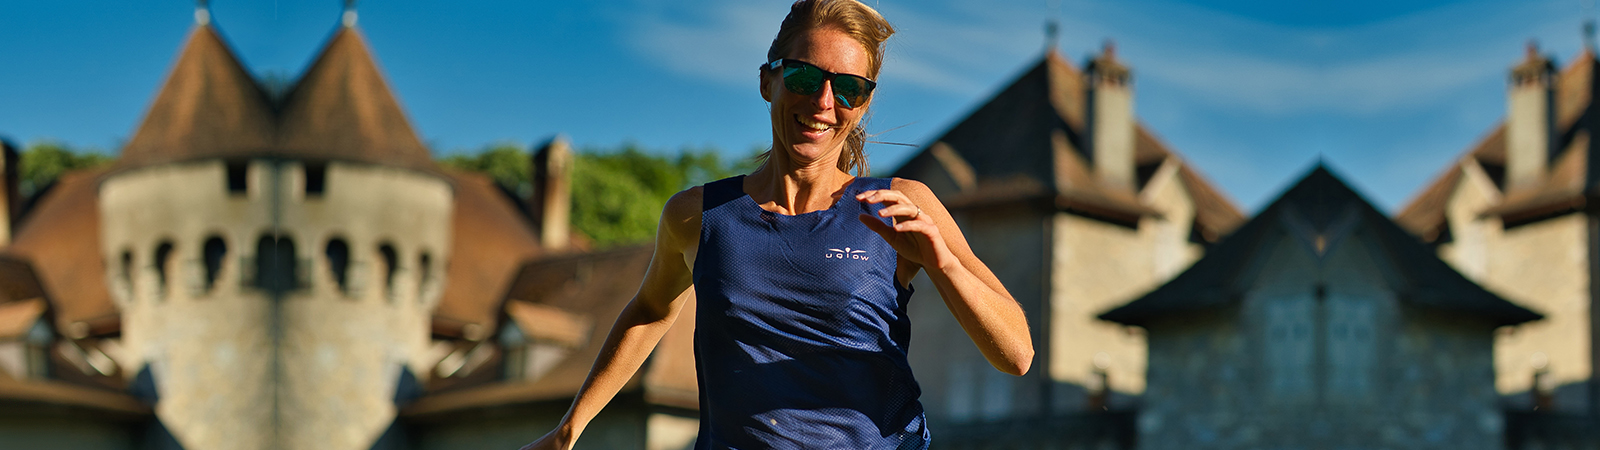 Camiseta running mujer Uglow super speed aero 85 gramos C1 4/21 Light grey, Equipación Running y Trail Running de alta calidad